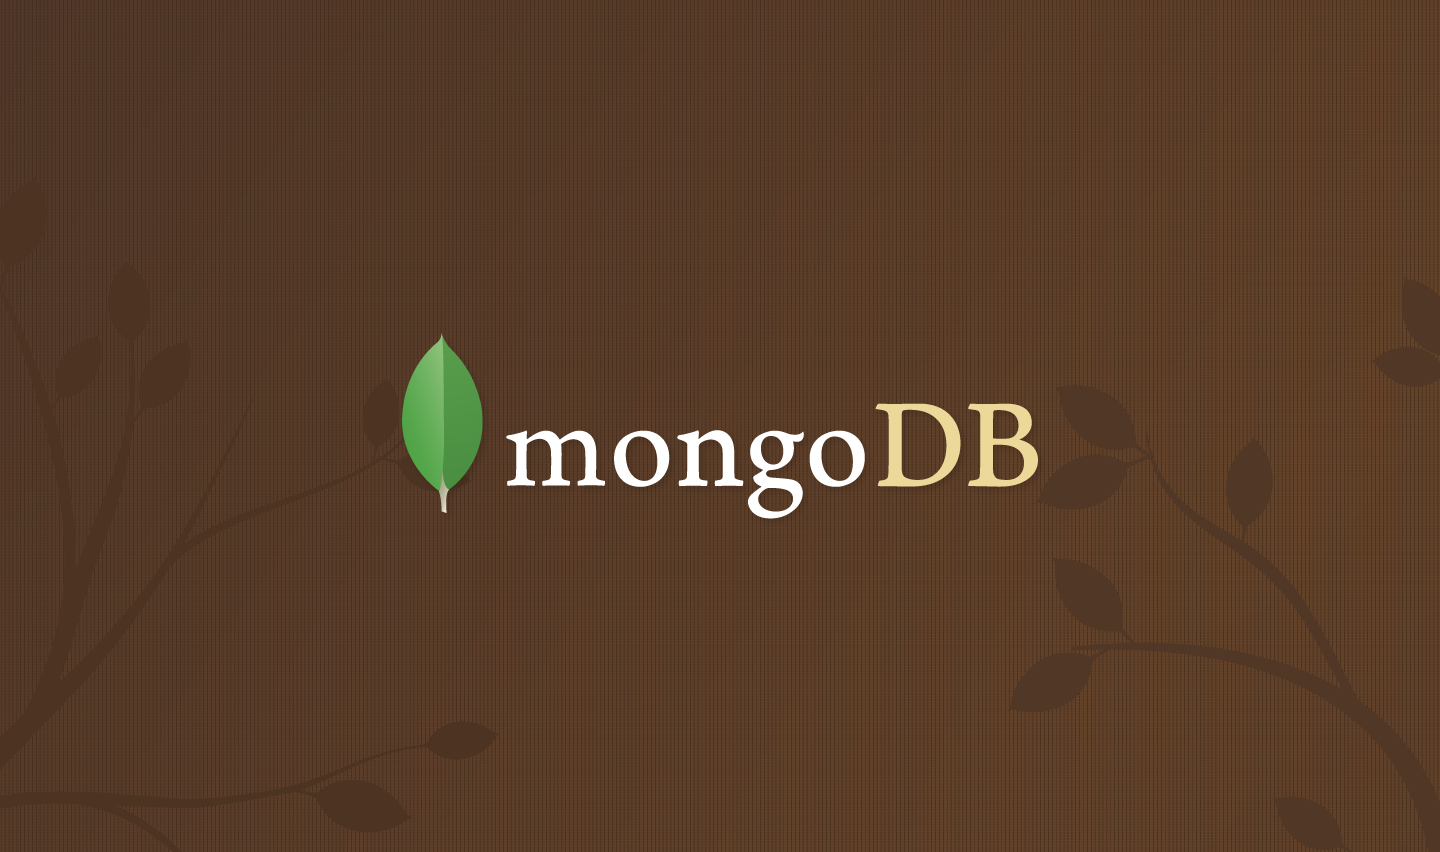 Day 21 - The MongoDB Shell